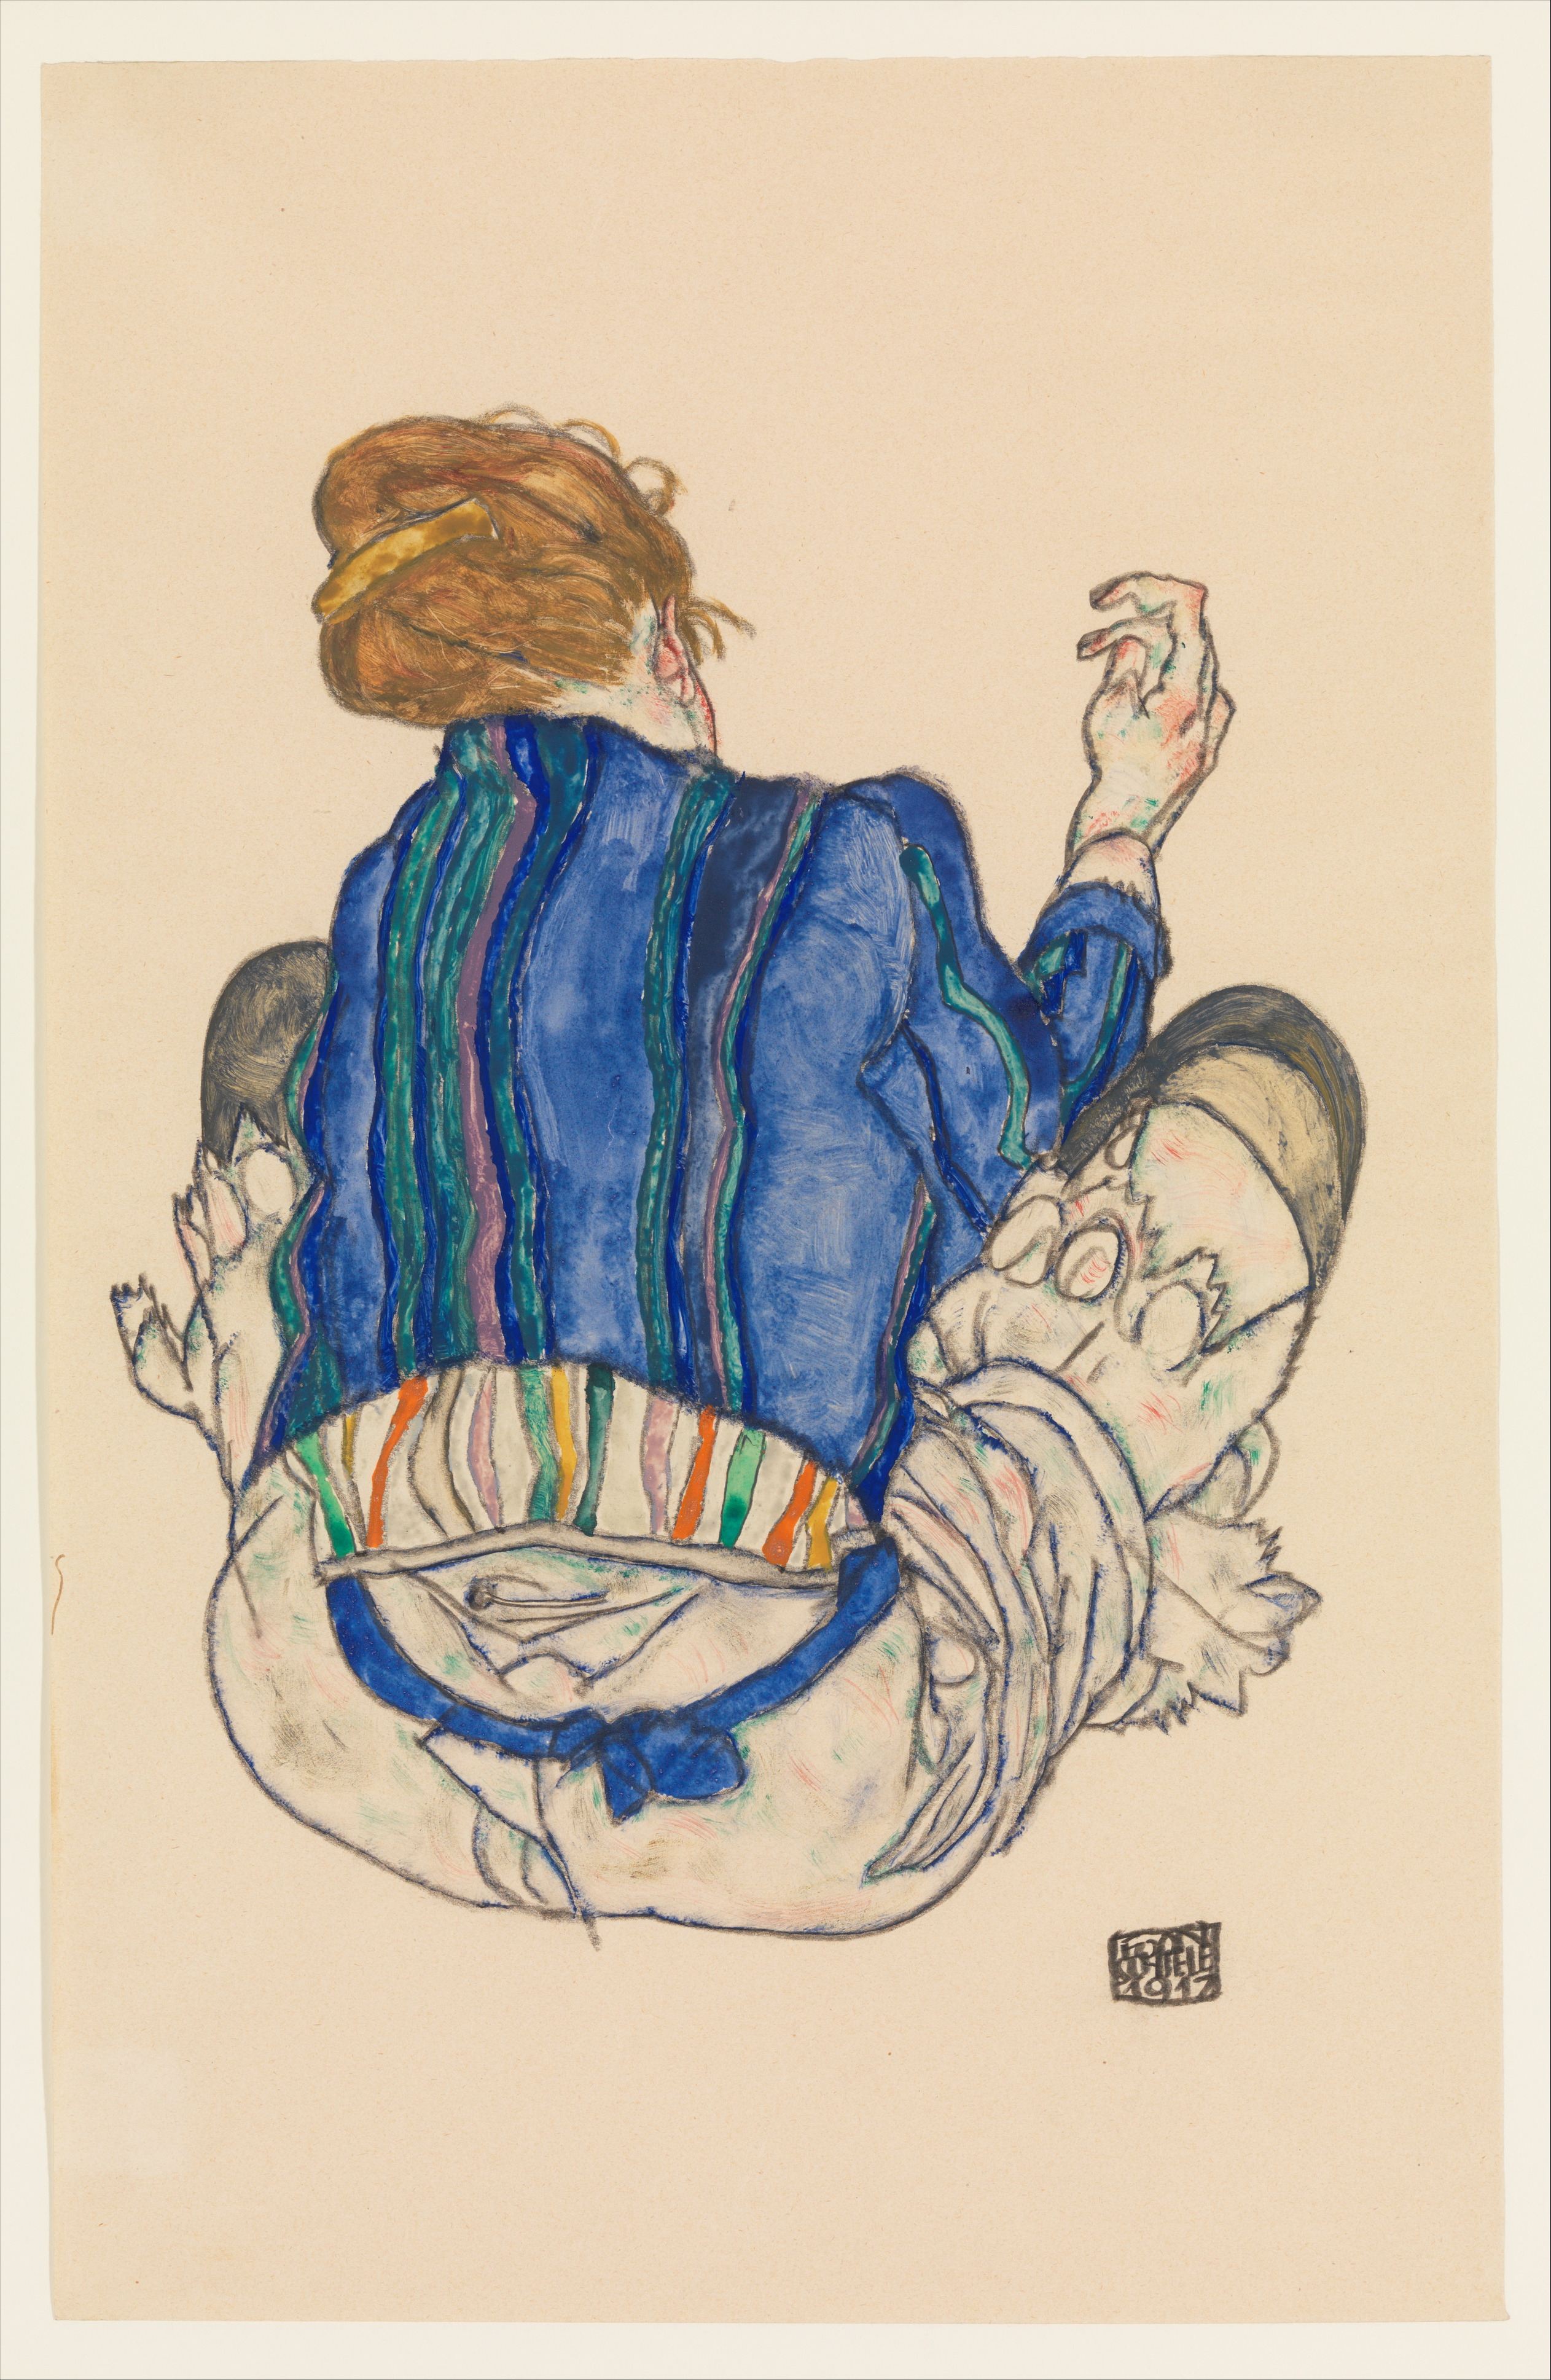 Siedząca kobieta odwrócona plecami by Egon Schiele - 1917 - 46,4 × 29,8 cm 